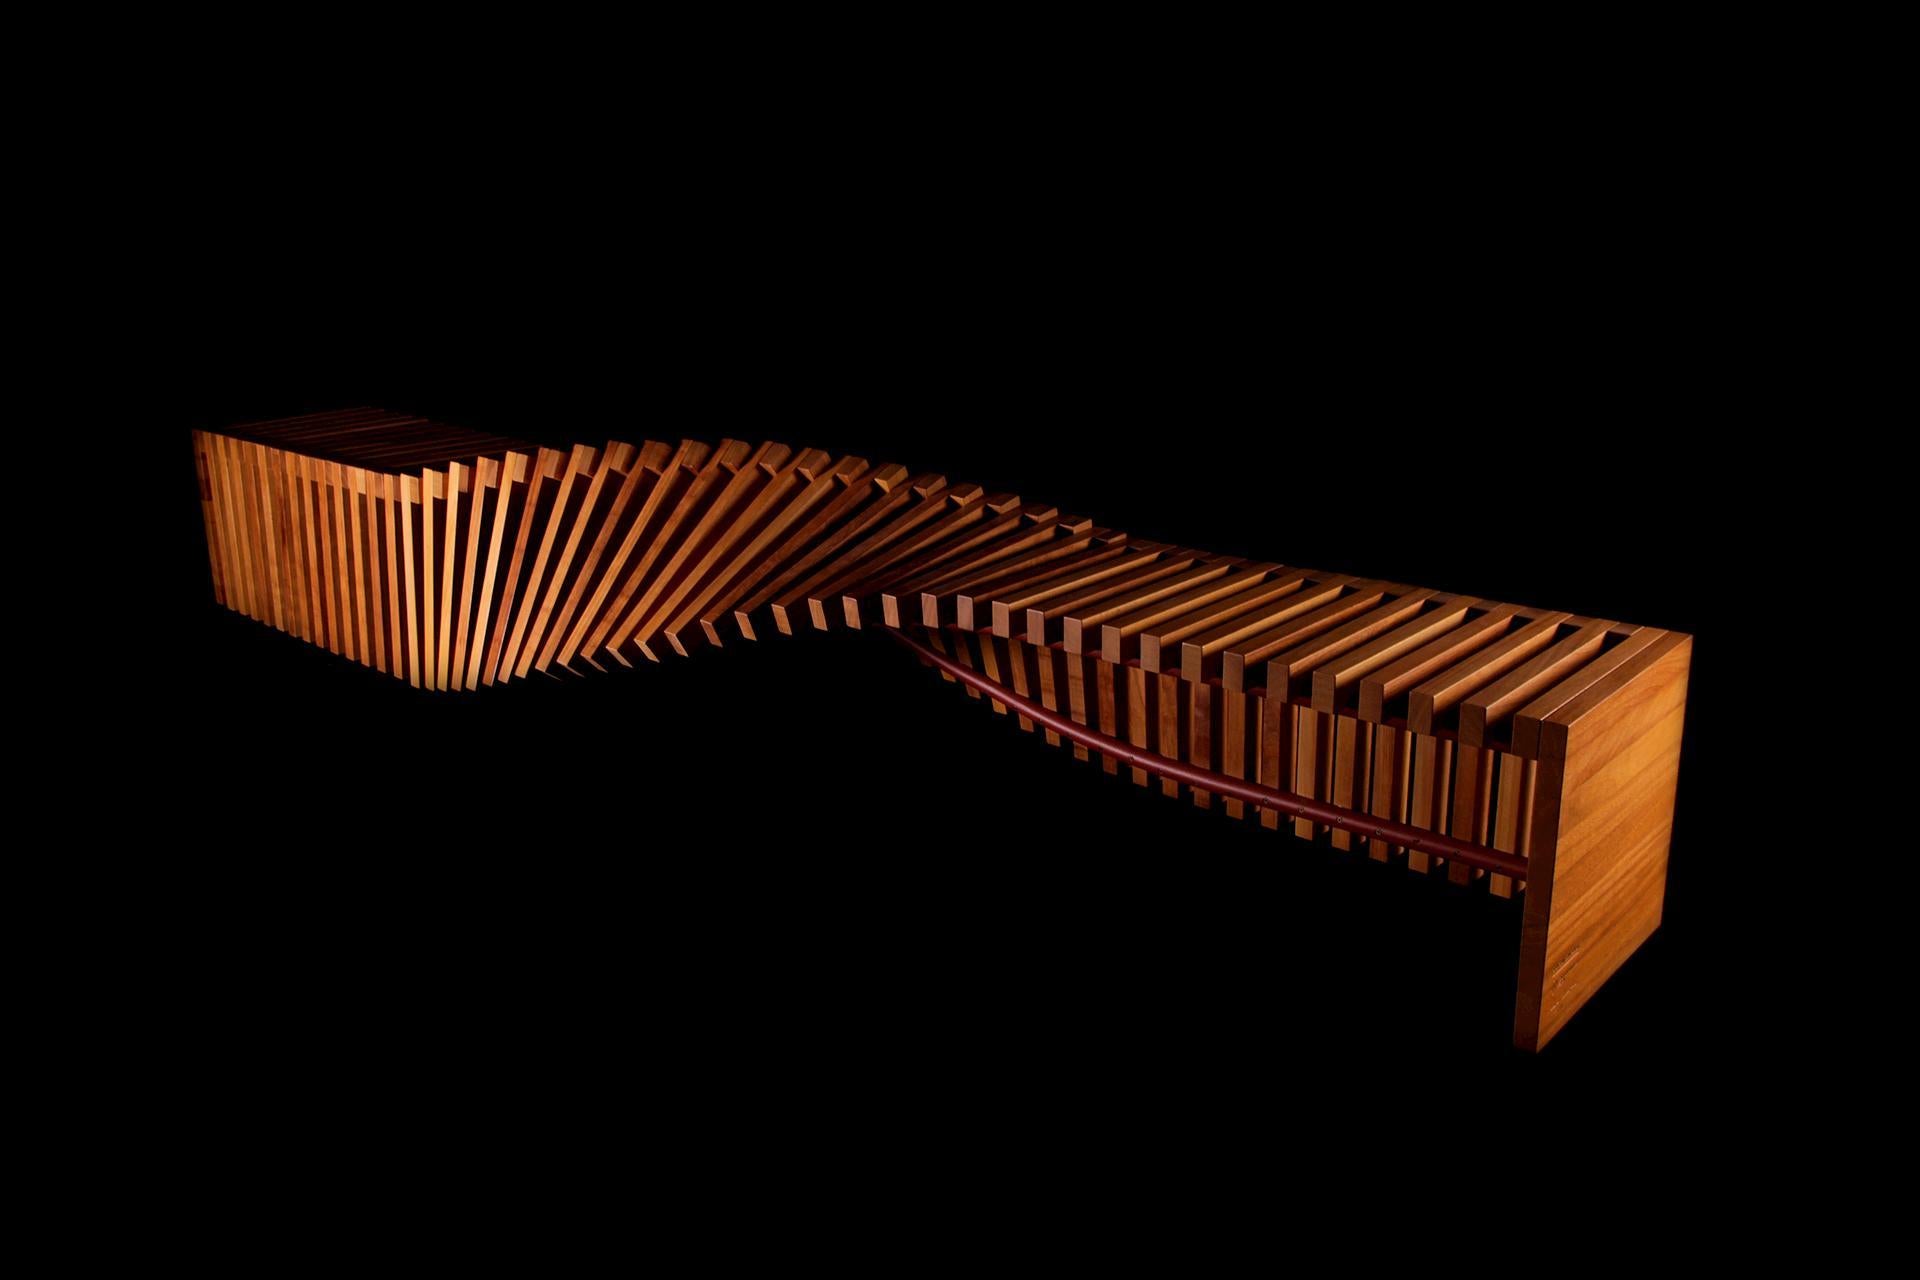 Soul sculpture wood bench large by Veronica Marli
Dimensions : D 300 x L 72 x H 58 cm. SH : 45 cm.
MATERIAL : Bois d'Iroko

Il est disponible en 2,5 mètres et 3 mètres de long, fabriqué en KRION® en édition limitée. Les différentes couleurs de